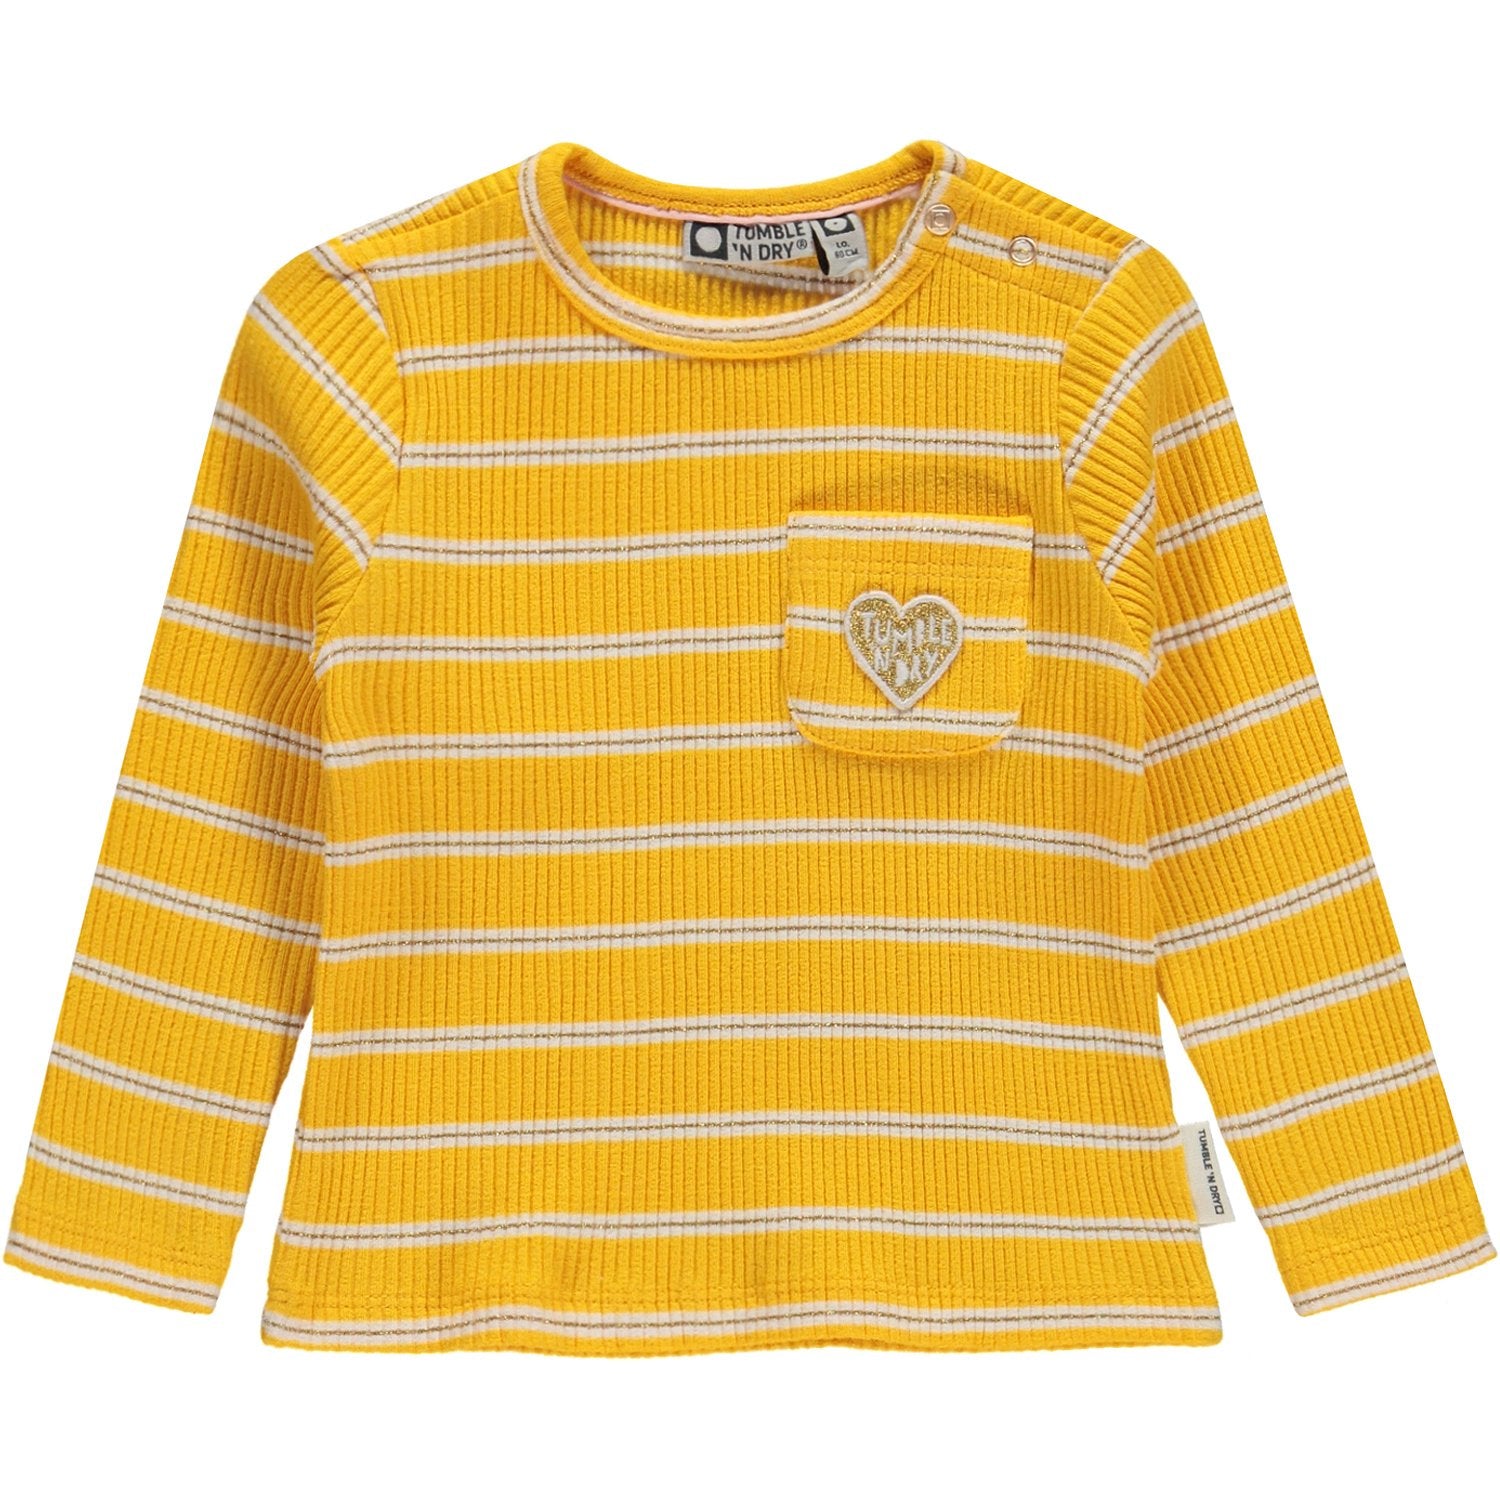 Baby Meisjes T-shirt Lm O-hals van Tumble 'n Dry in de kleur Old gold in maat 86.